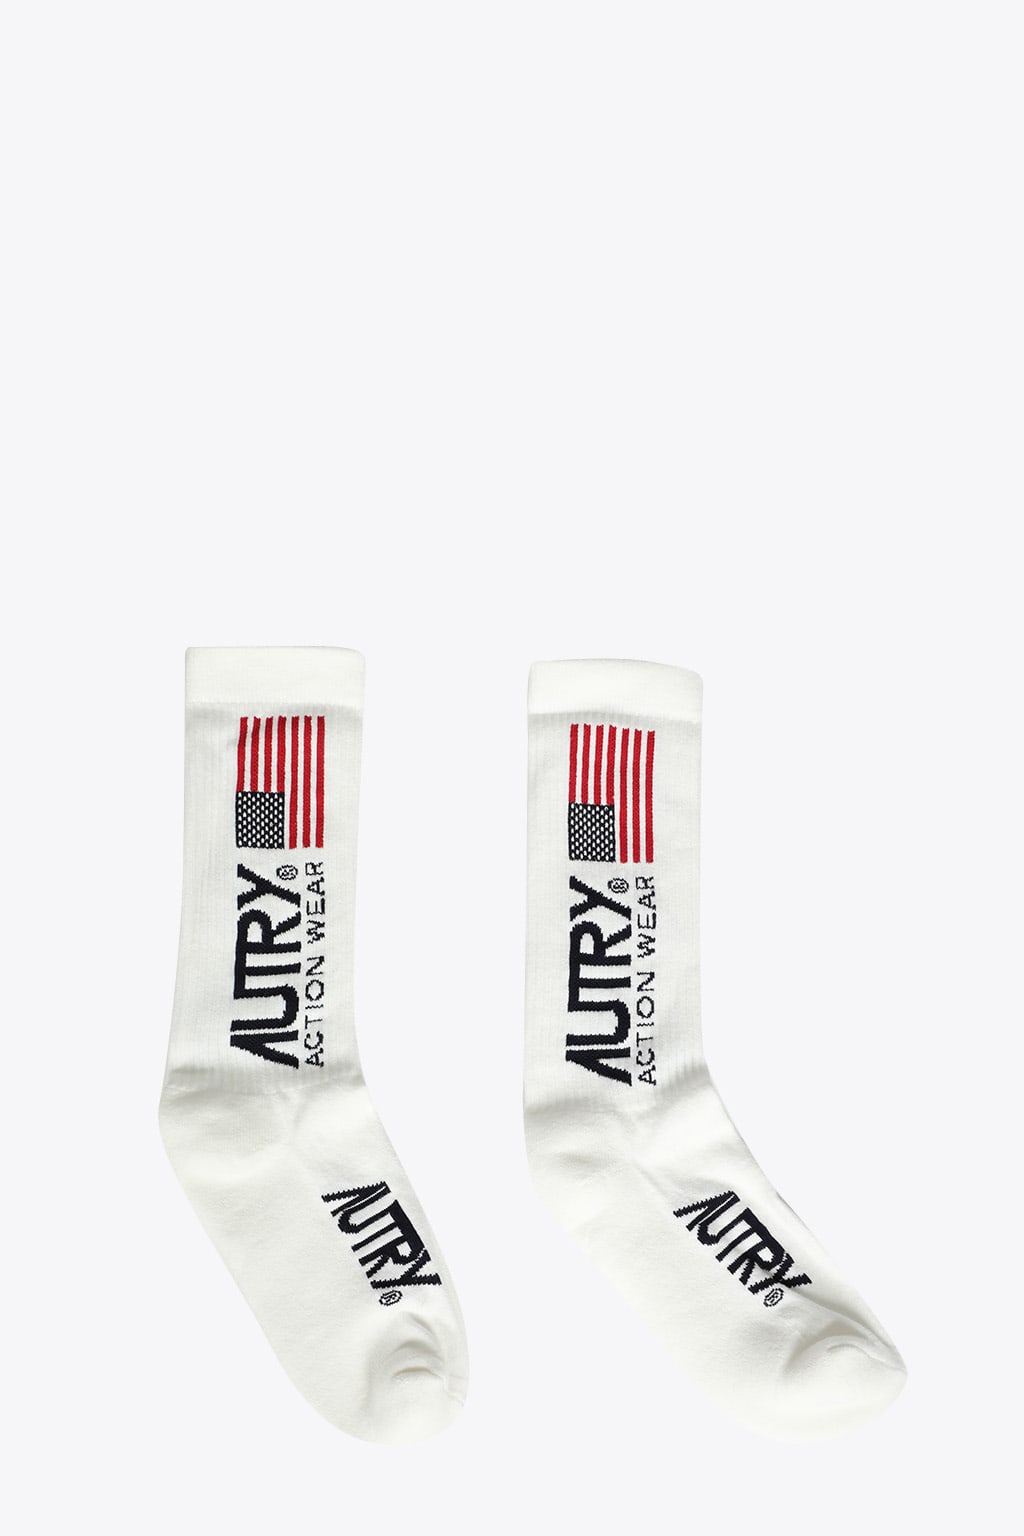 Autry Socks Iconic Unisex Logo White ribbed cotton socks with logo